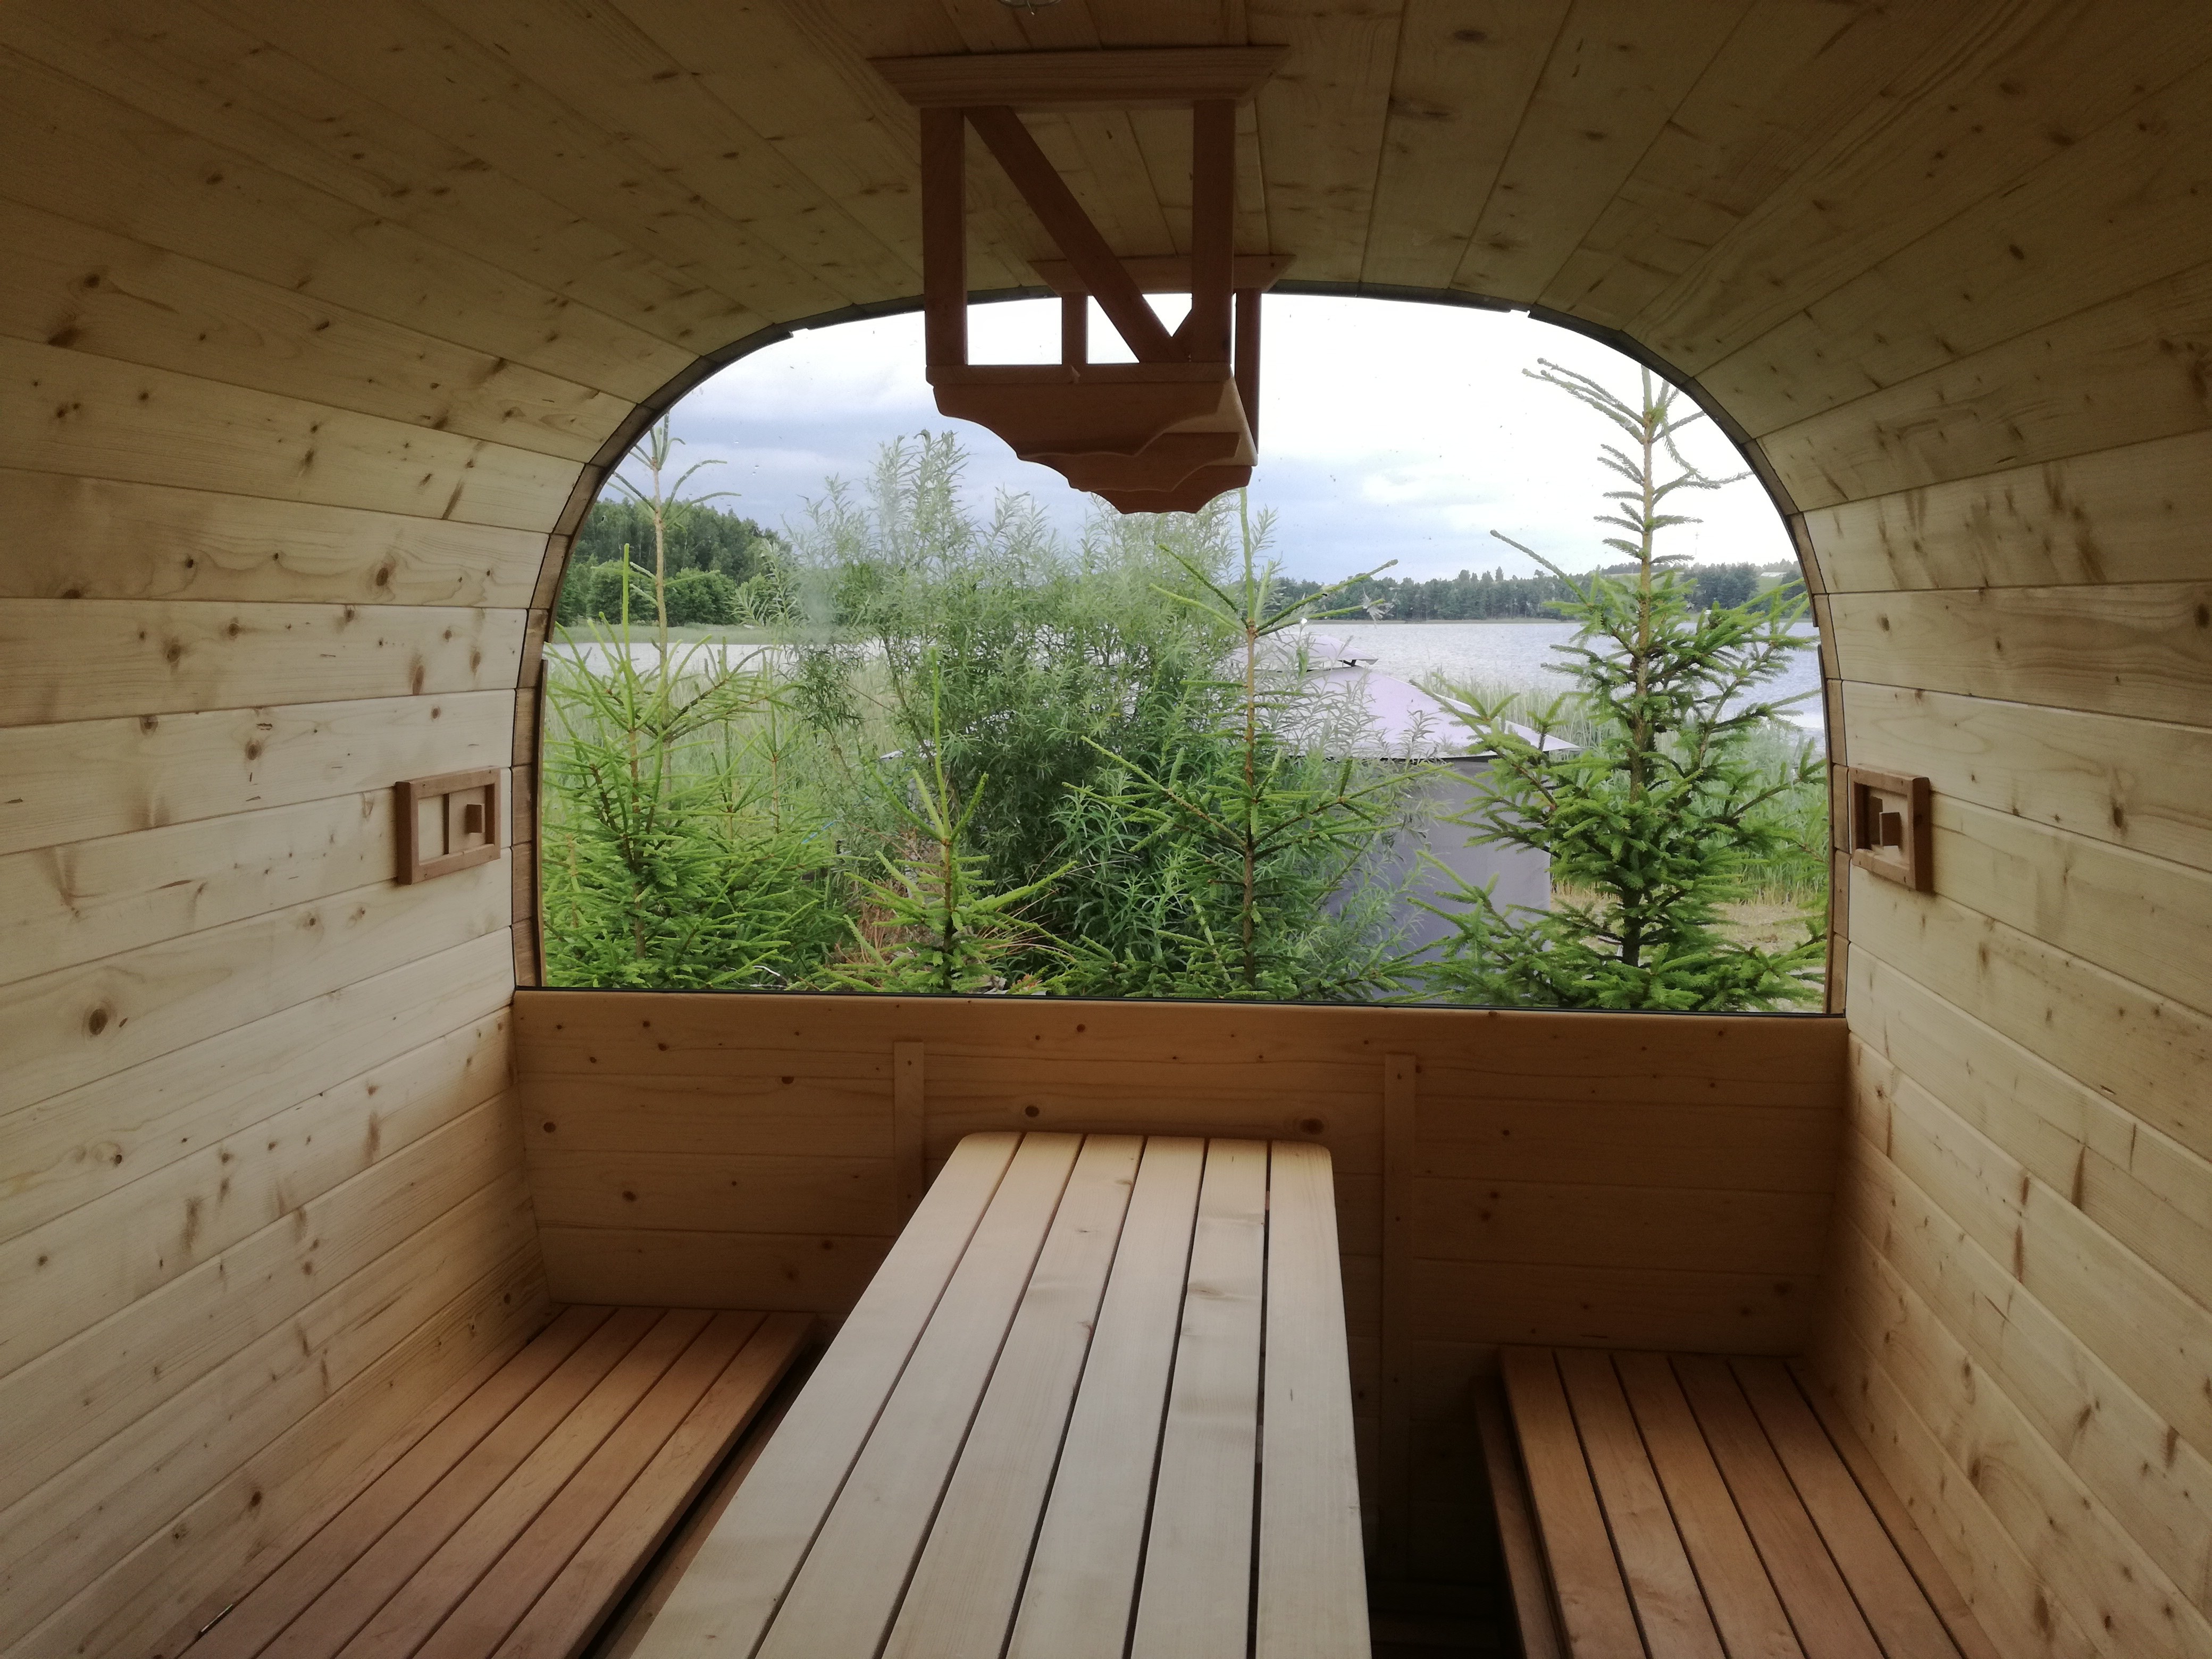 Rodzaje saun: fińska, parowa, ruska bania… którą wybrać?